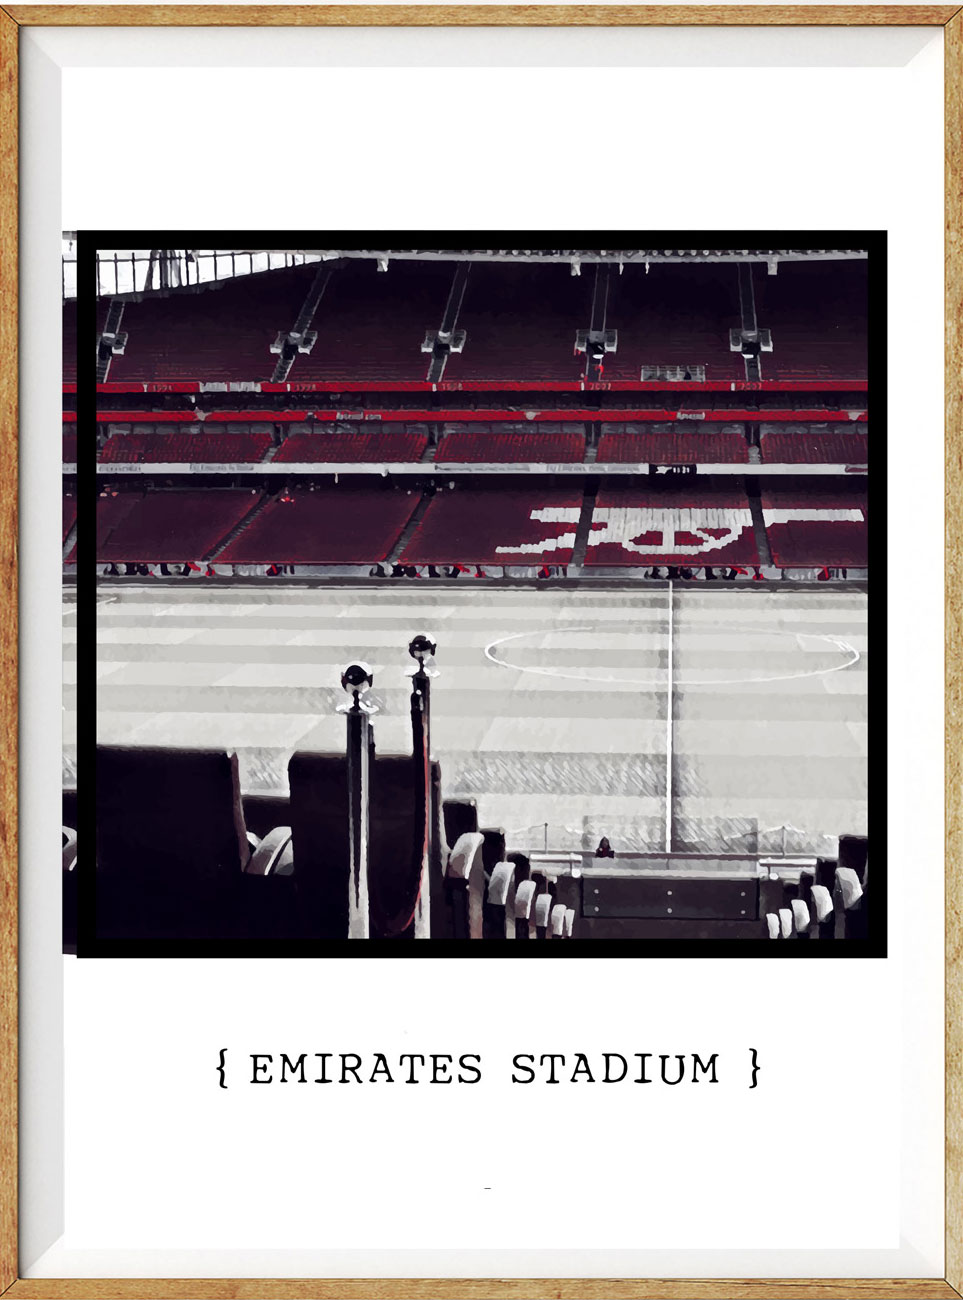 Emirates Stadium2